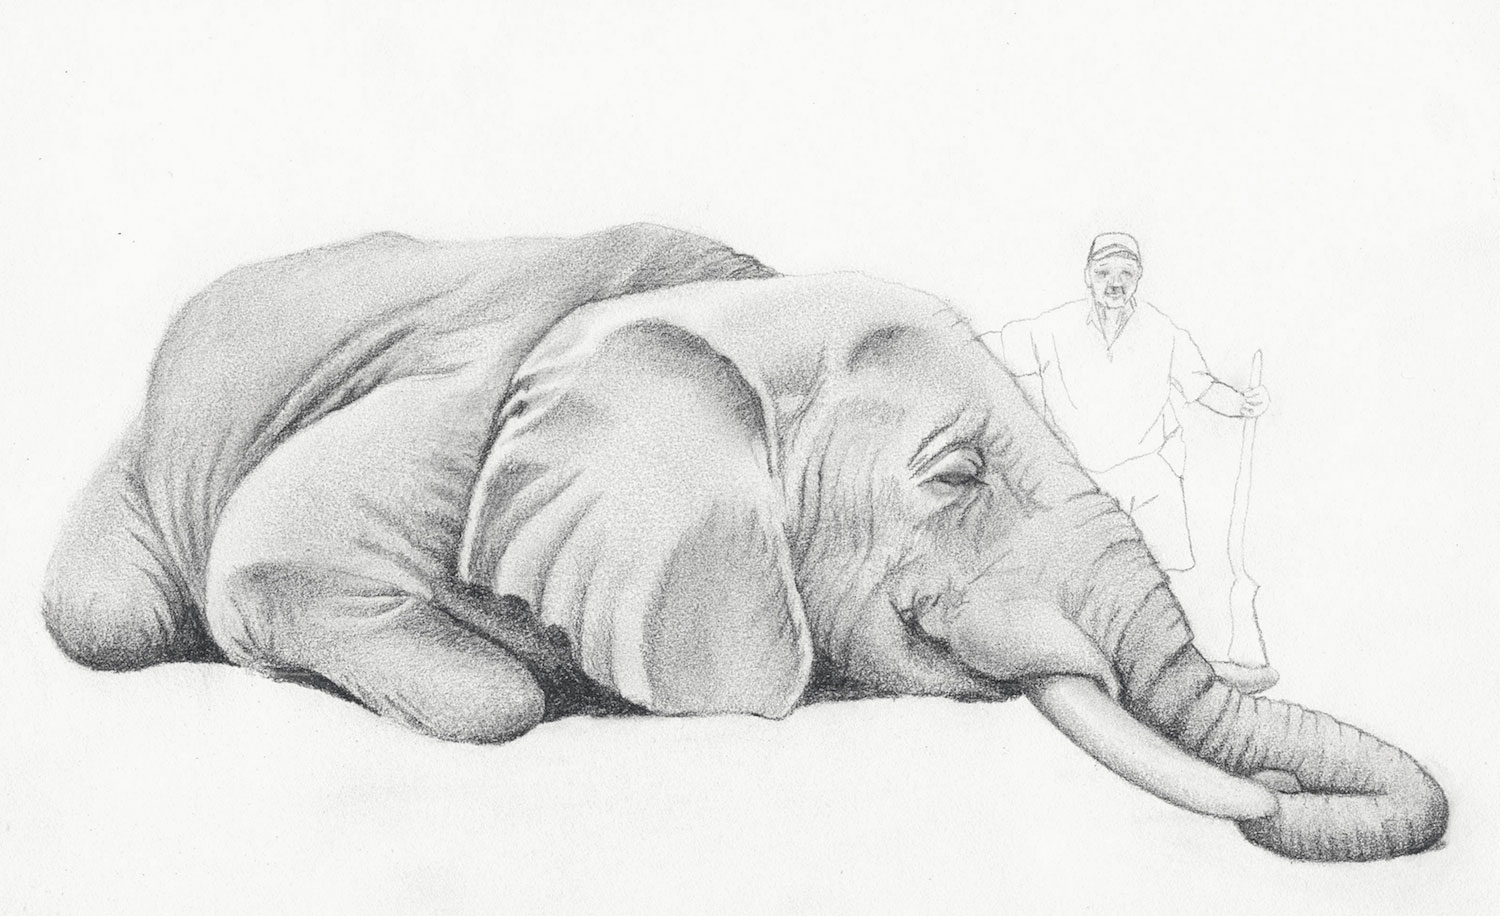 Jackie Skrzynski, Elephant, 2013. Pencil 8 x 11 in.